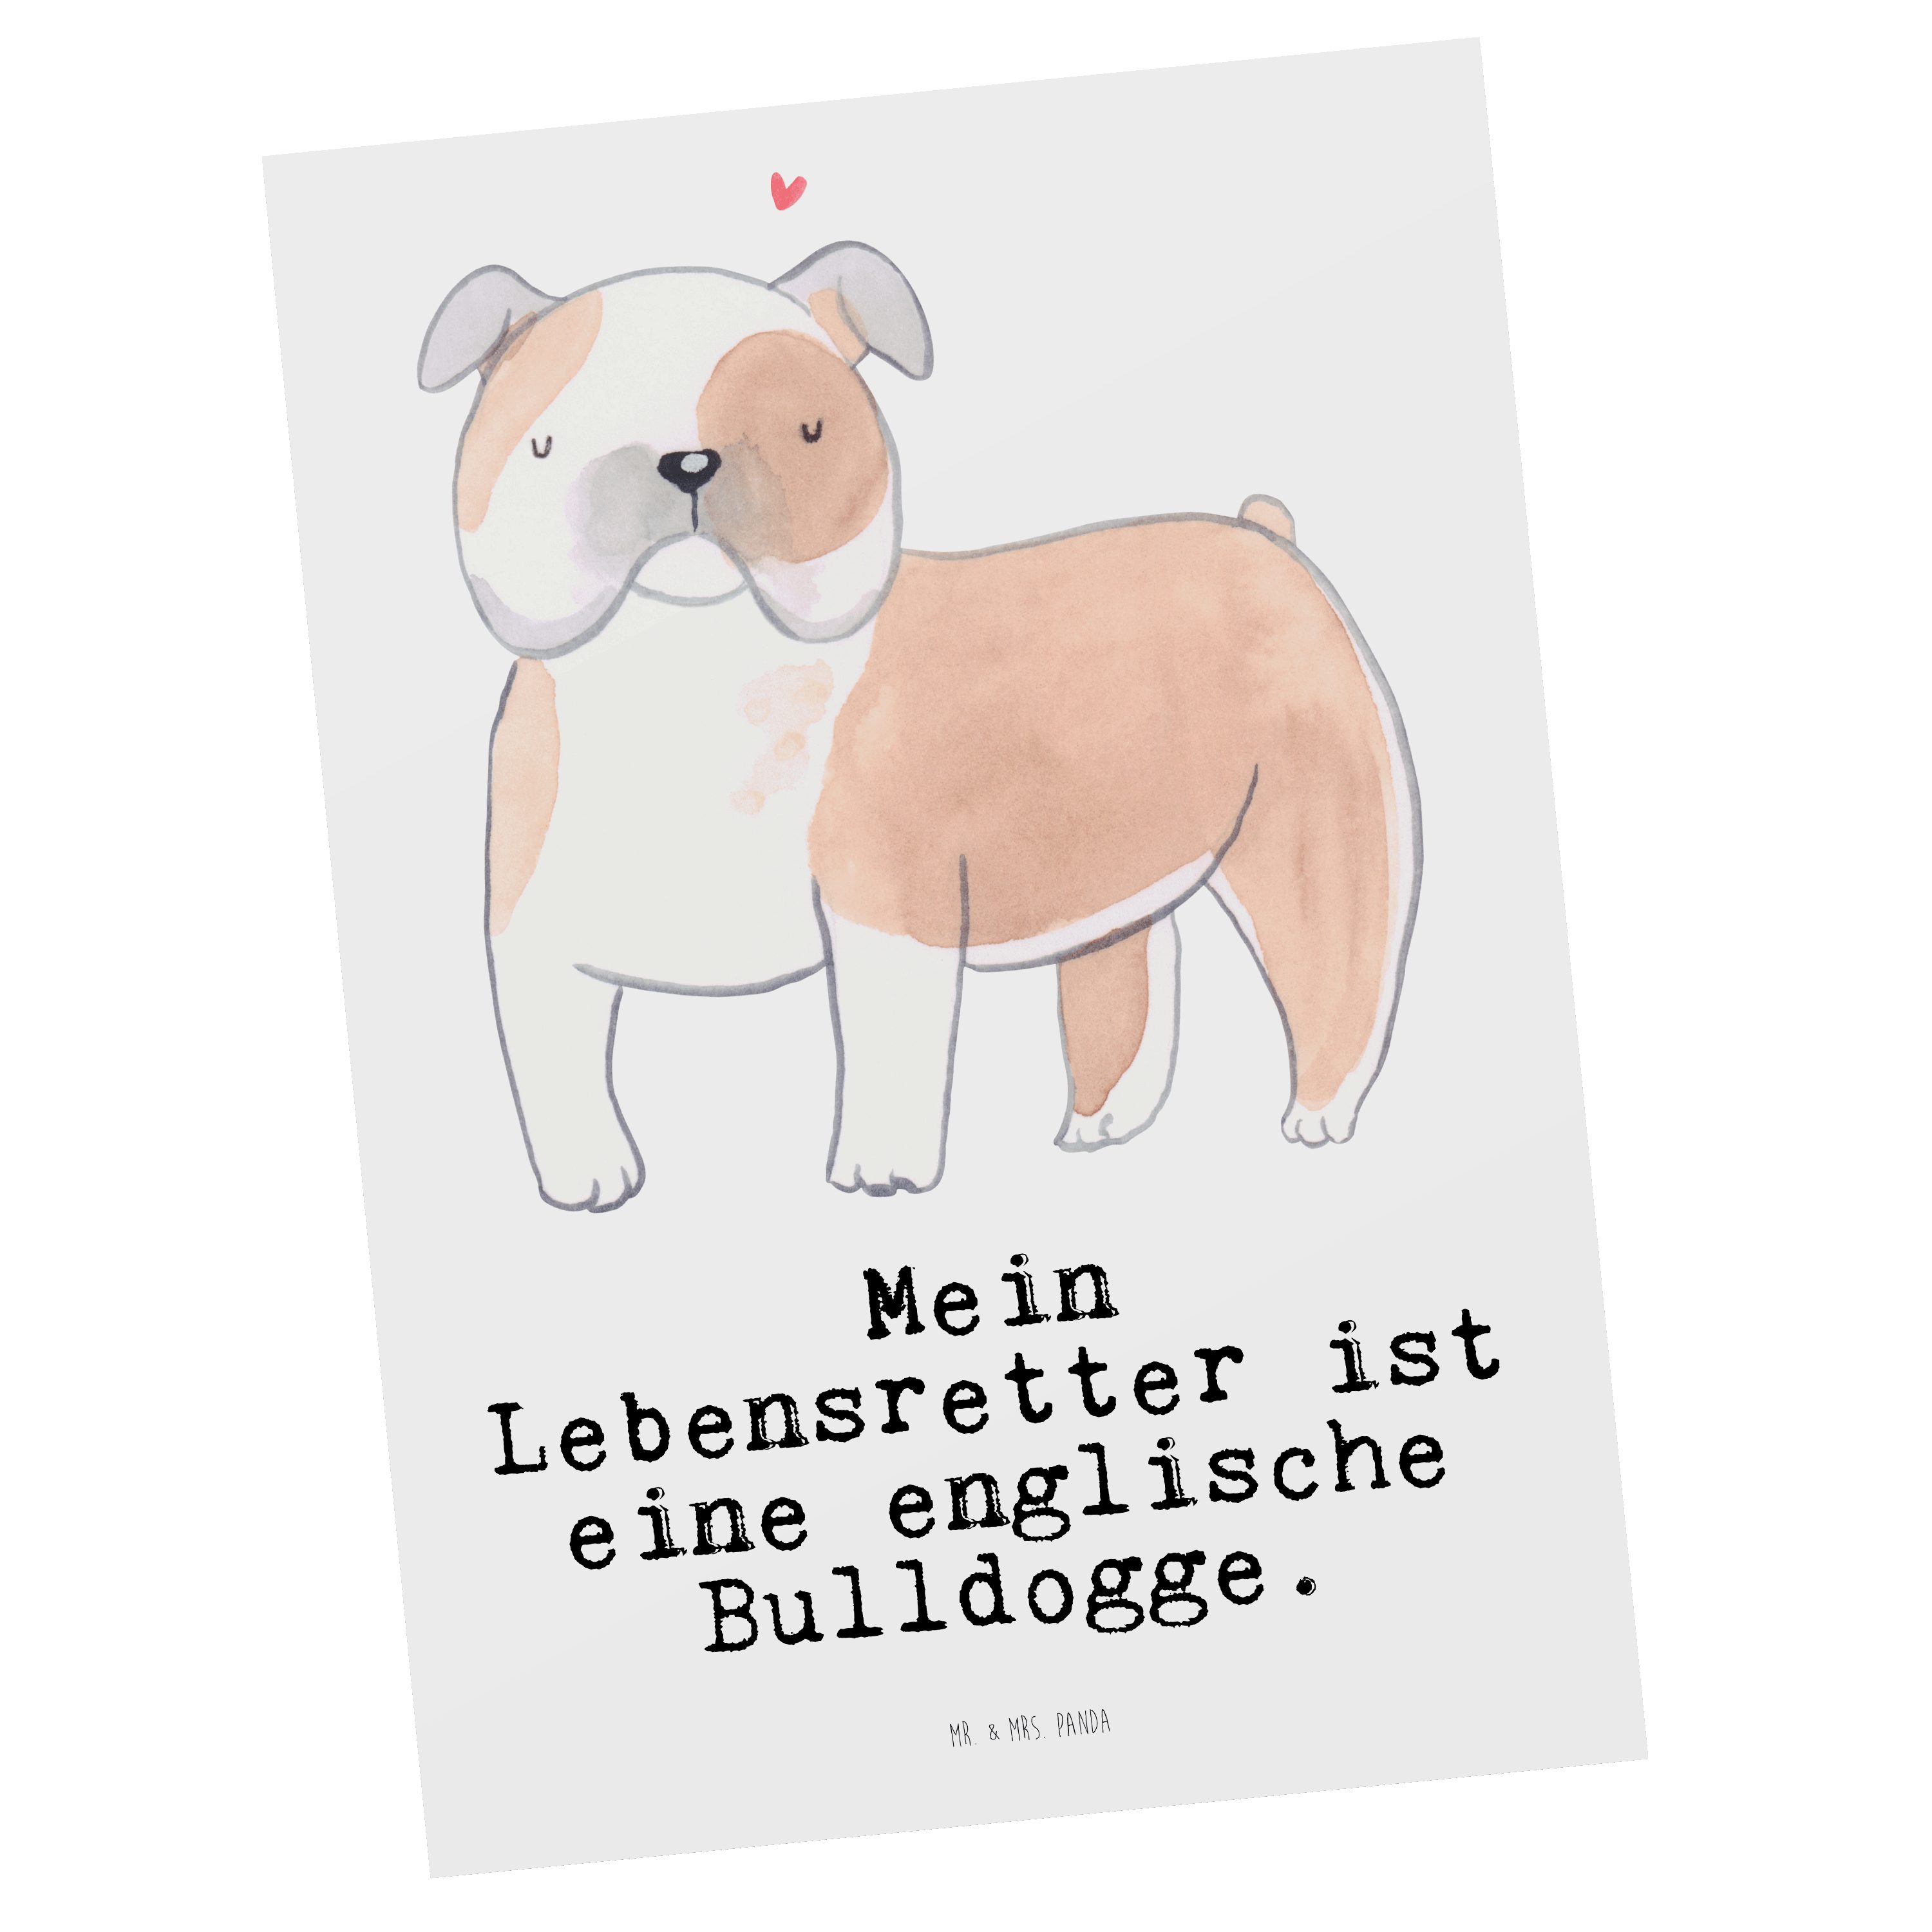 Mr. & Mrs. Panda Postkarte Englische Bulldogge Lebensretter - Weiß - Geschenk, Geschenkkarte, Ka, Hochglänzend veredelt